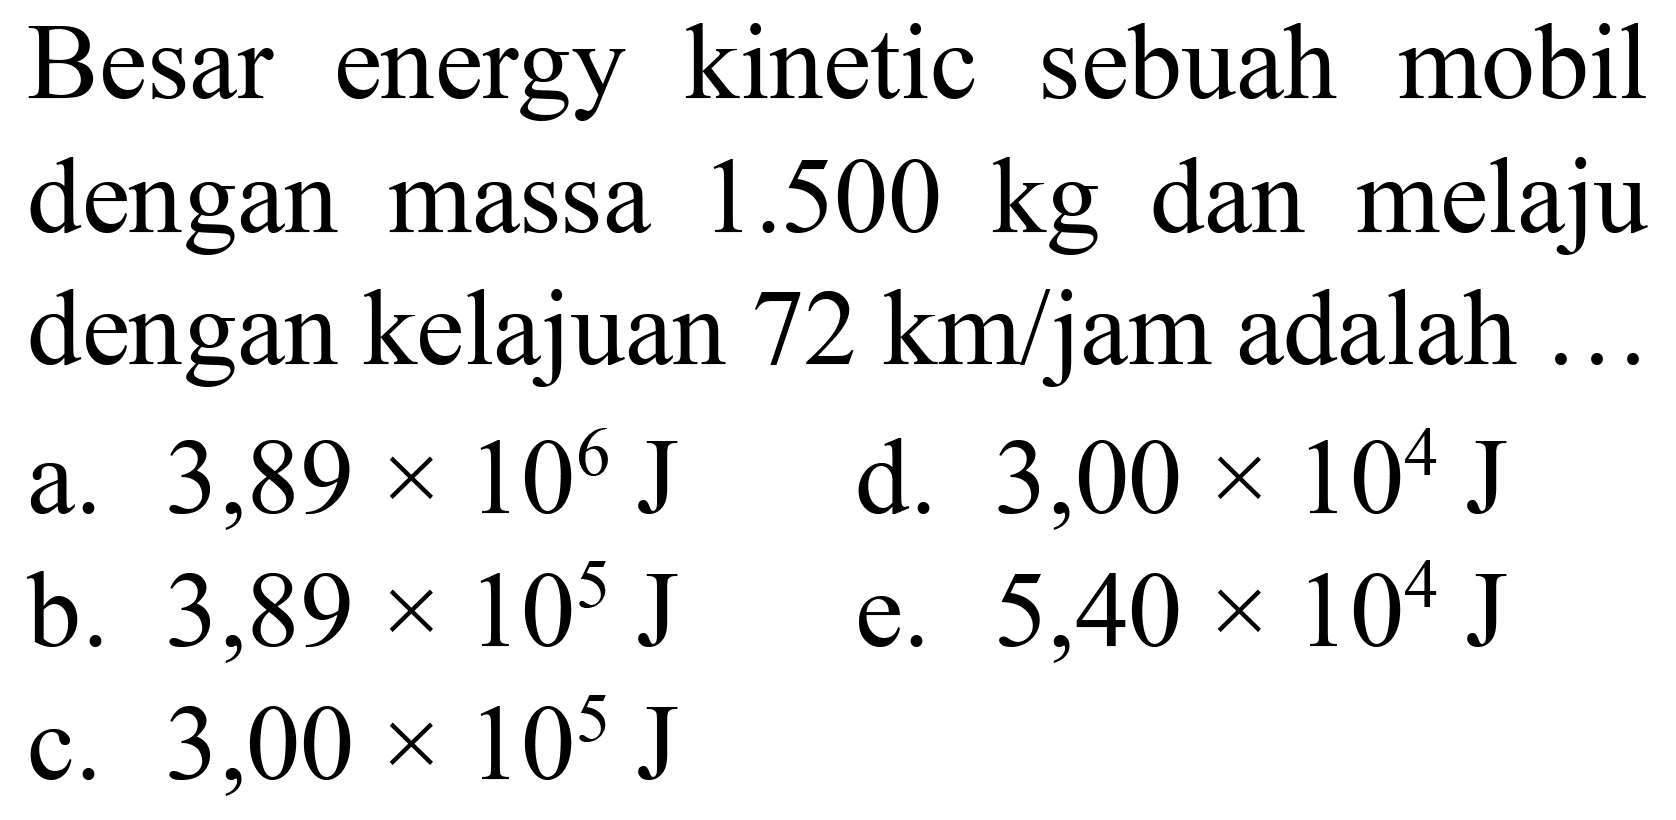 Besar energy kinetic sebuah mobil dengan massa  1.500 kg  dan melaju dengan kelajuan  72 ~km / jam  adalah ...
a.  3,89 x 10^(6) ~J 
d.  3,00 x 10^(4) ~J 
b.  3,89 x 10^(5) ~J 
e.  5,40 x 10^(4) ~J 
c.  3,00 x 10^(5) ~J 